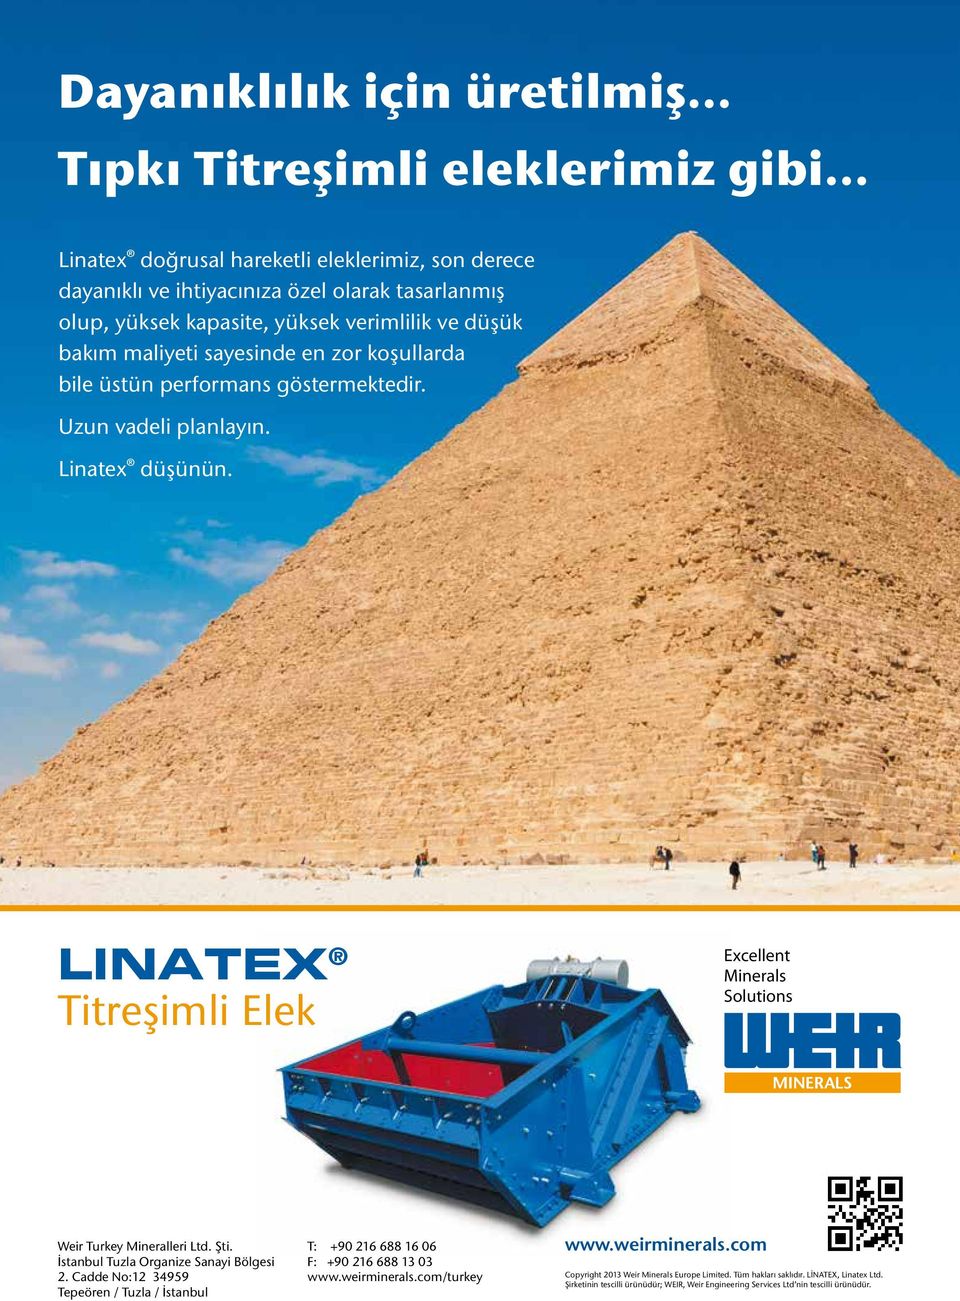 LINATEX Titreşimli Elek Excellent Minerals Solutions Weir Turkey Mineralleri Ltd. Şti. İstanbul Tuzla Organize Sanayi Bölgesi 2.